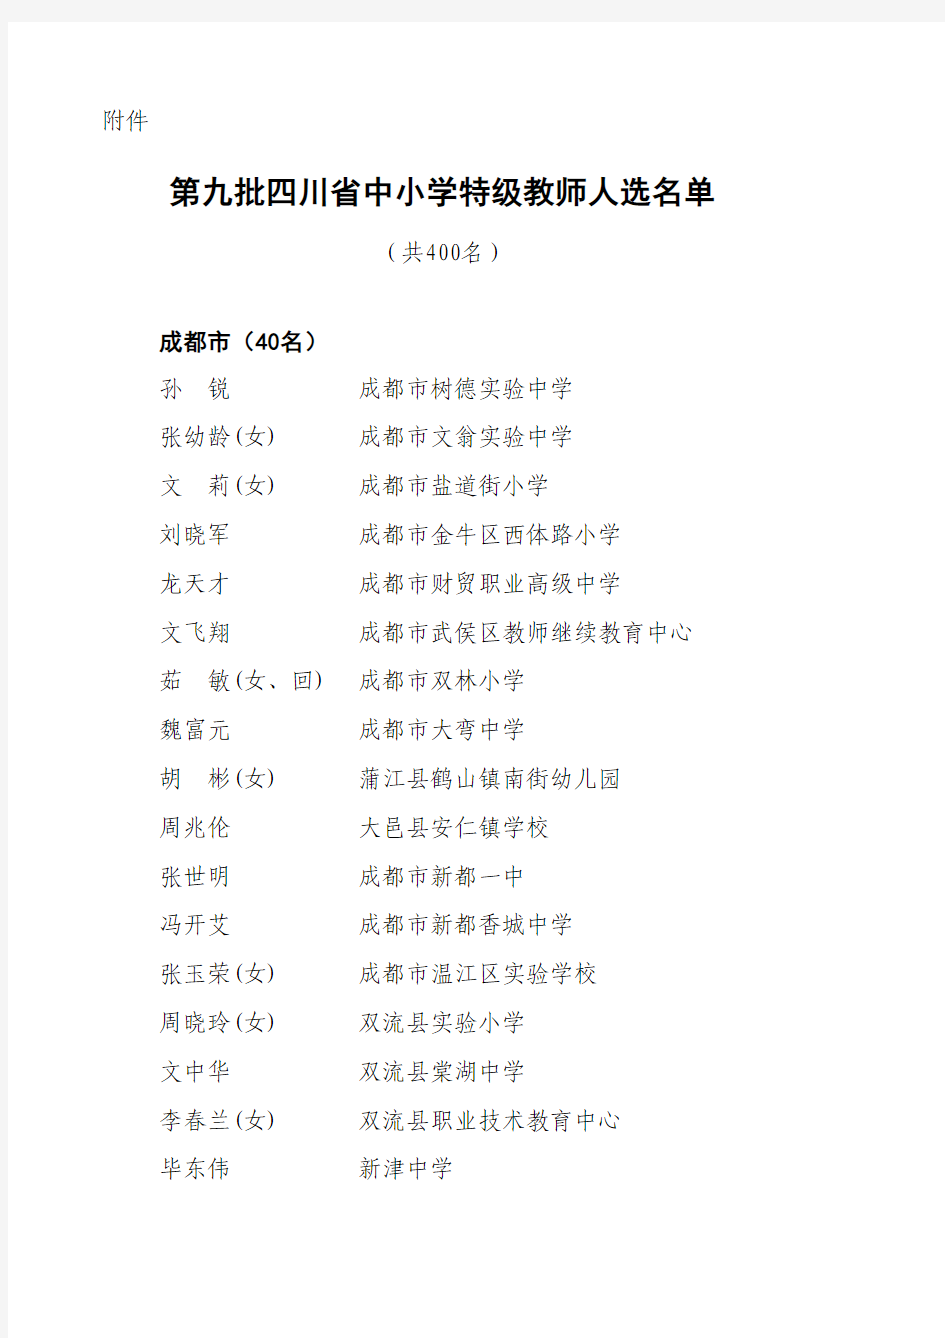 第九批四川省中小学特级教师人选名单